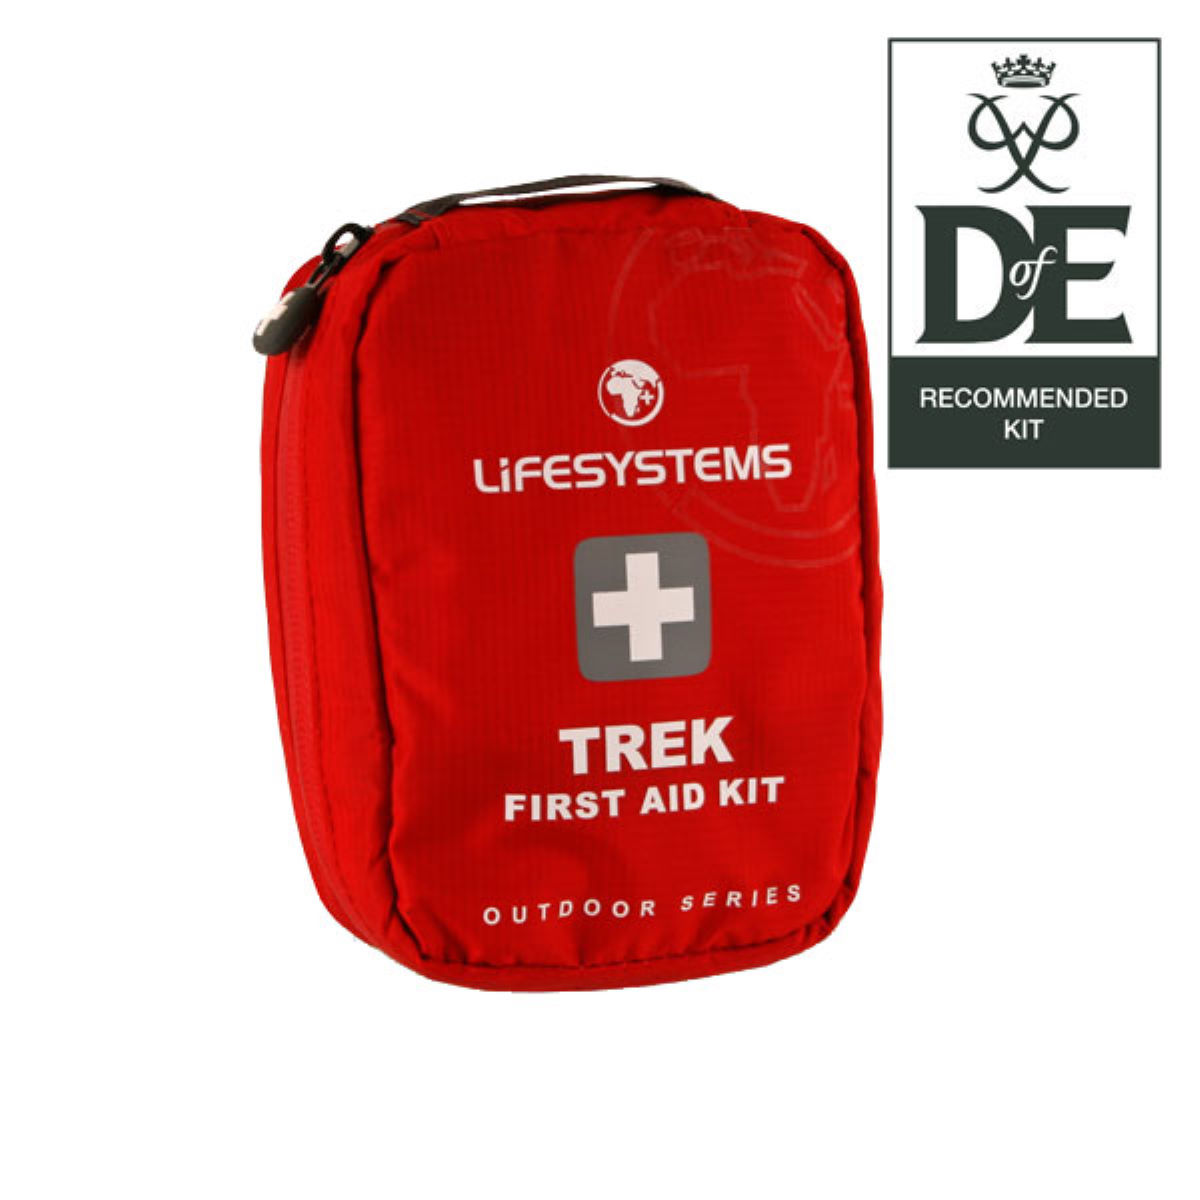 Kit de primeros auxilios Lifesystems Trek - Kits de primeros auxilios